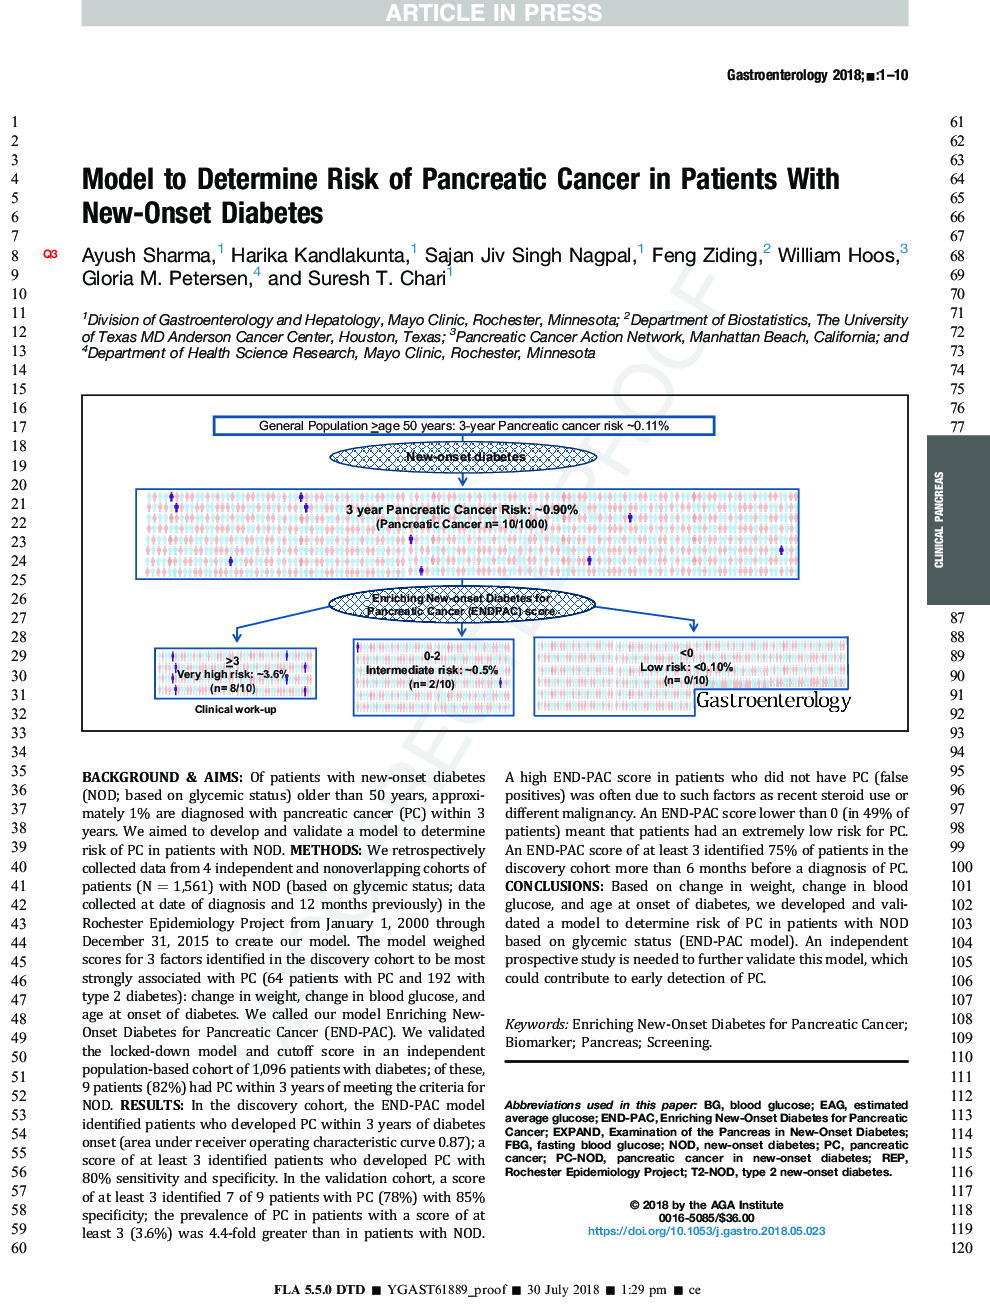 مدل برای تعیین خطر ابتلا به سرطان پانکراس در بیماران مبتلا به دیابت نوع دو